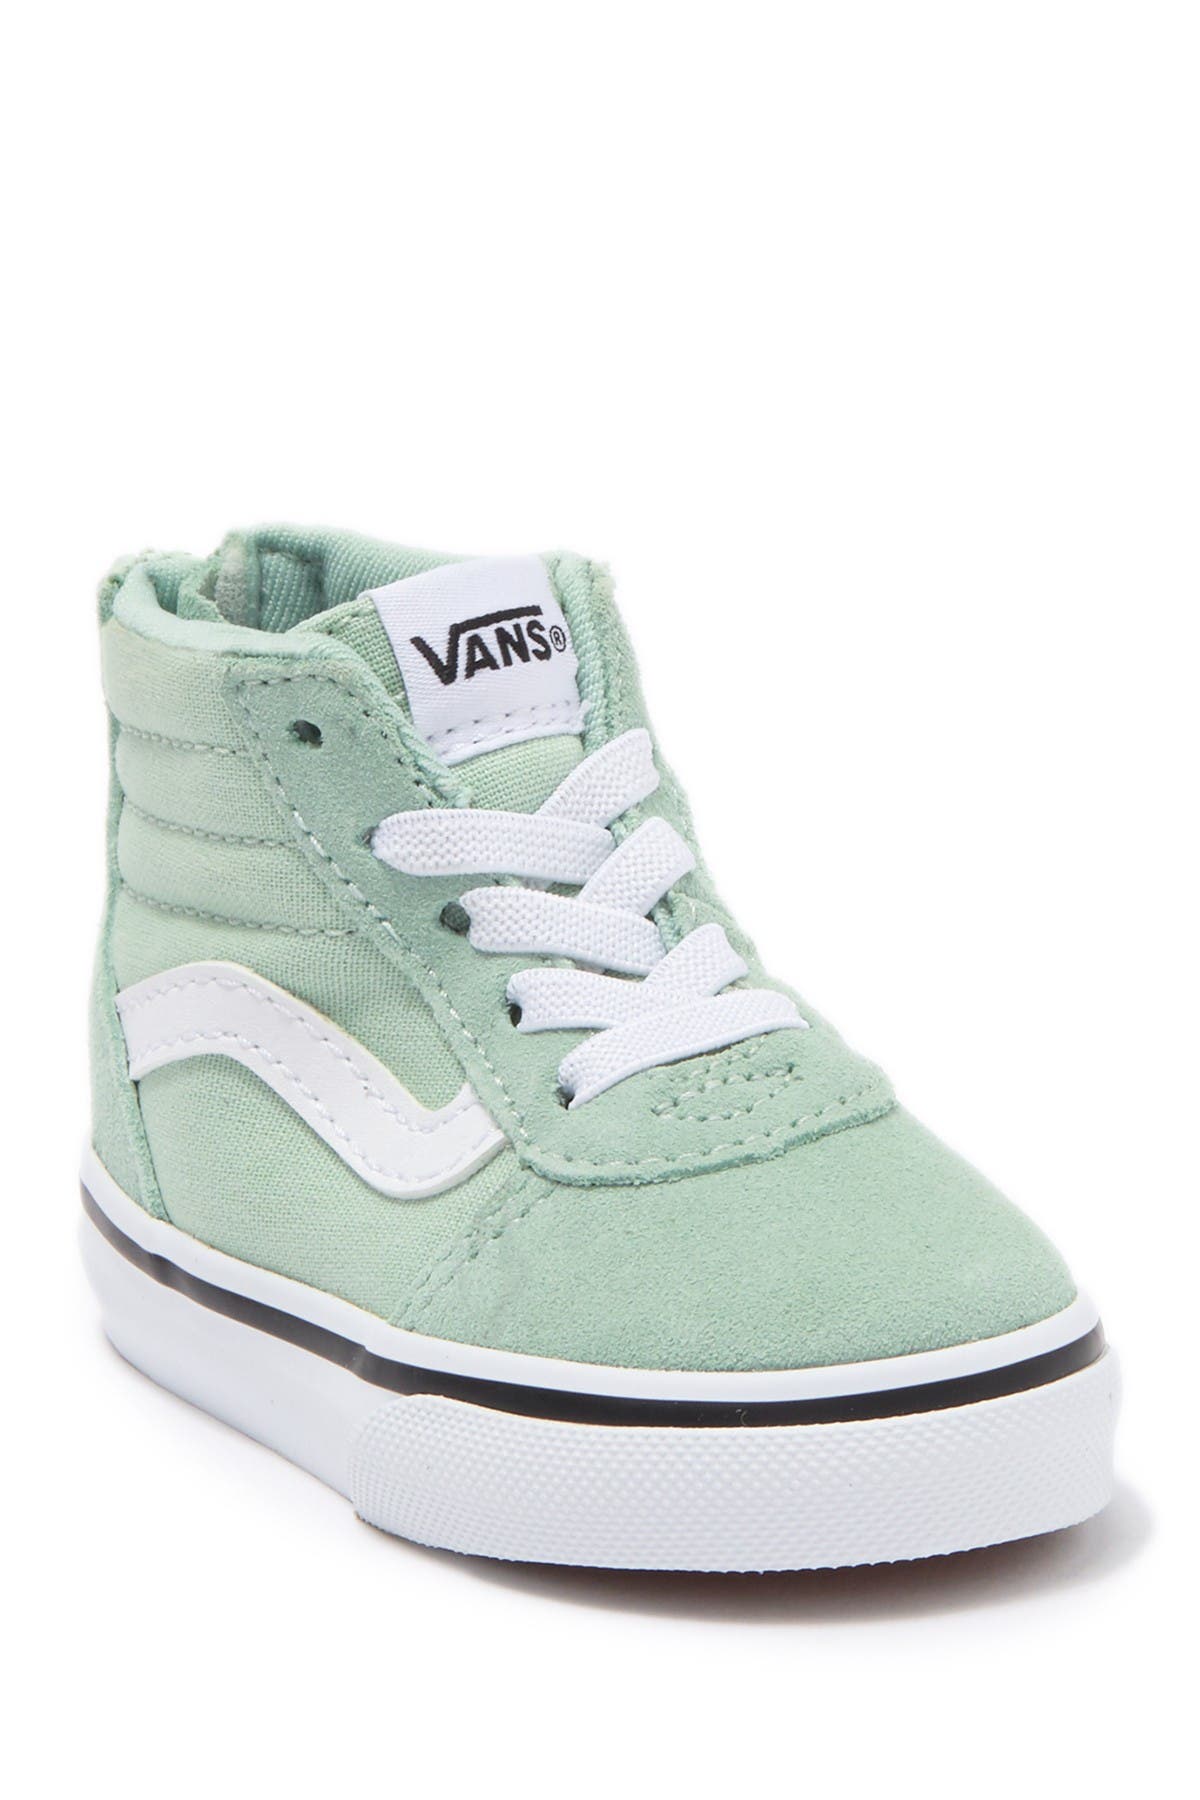 VANS | Ward Hi Zip Suede Sneaker 